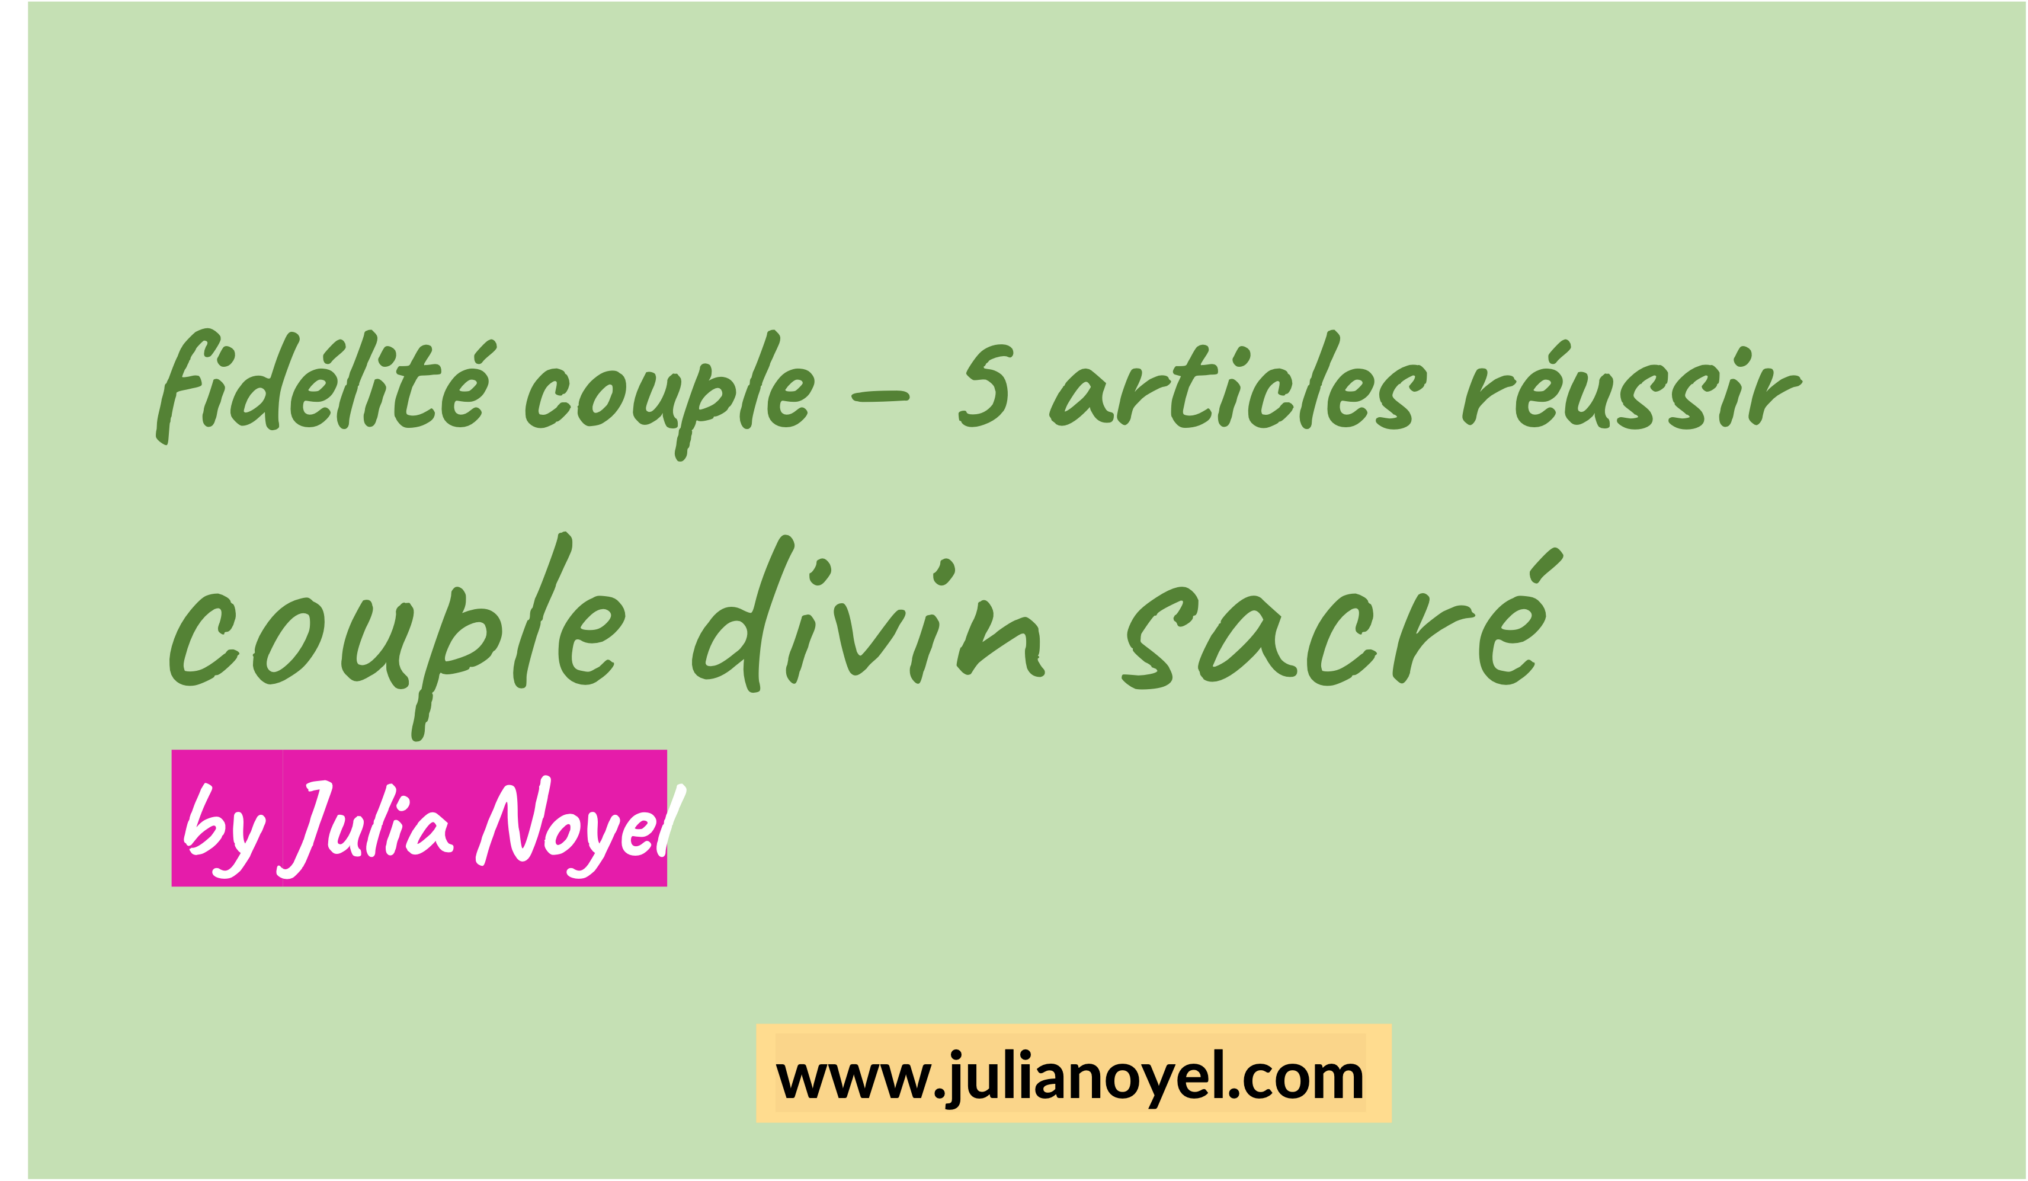 fidélité couple – 5 articles réussir couple divin sacré by Julia Noyel
